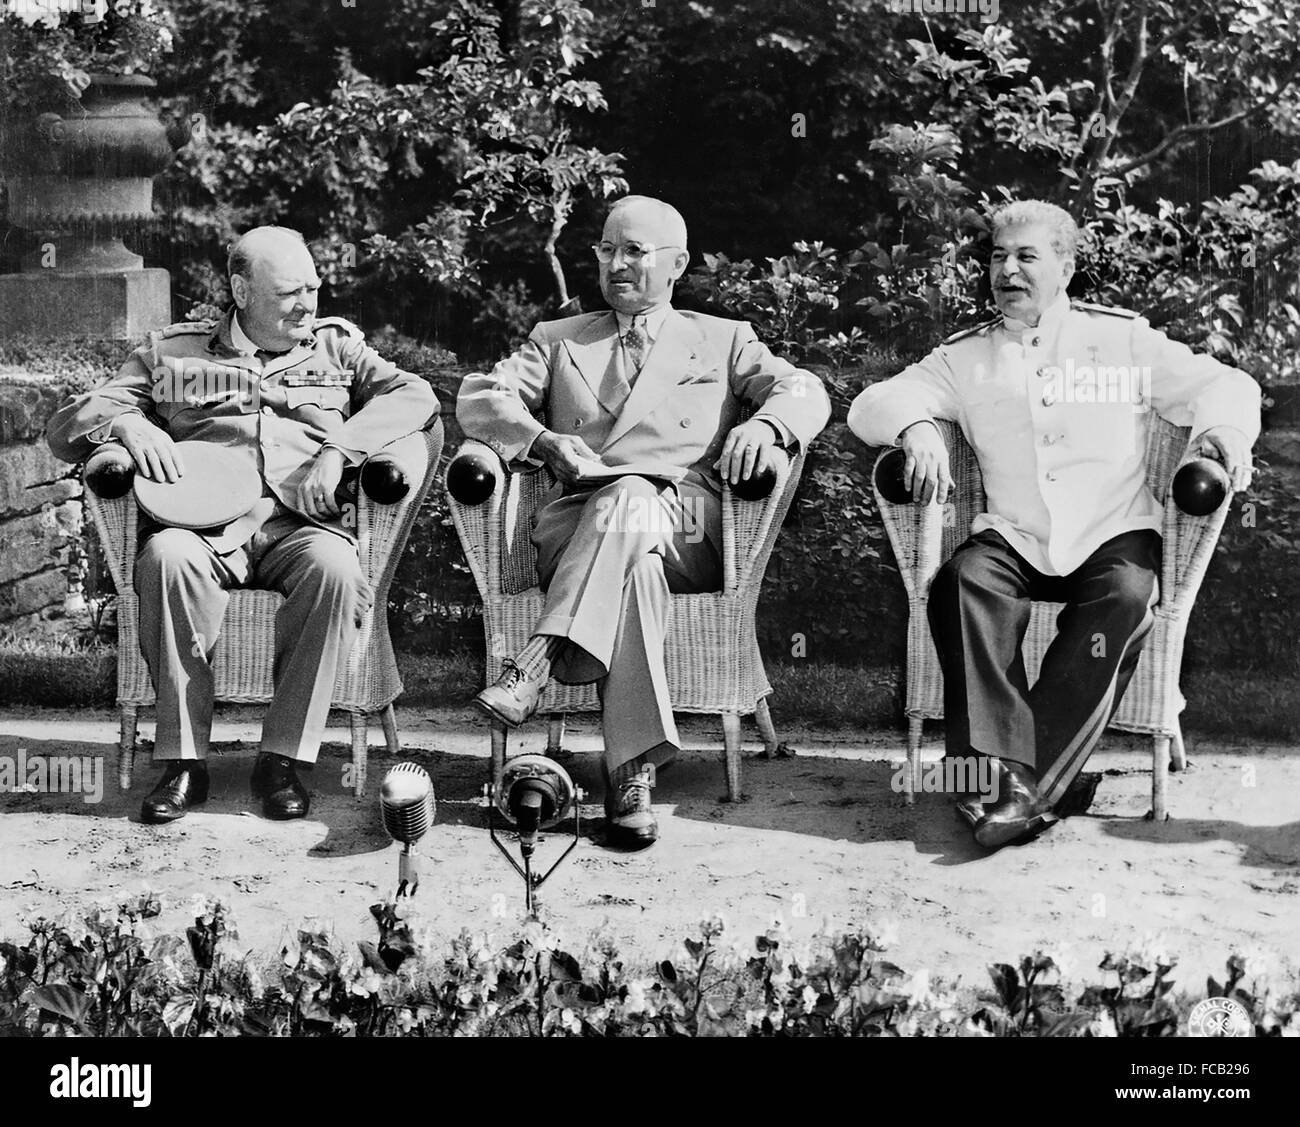 Conferenza di Potsdam, 1945. Il Primo ministro inglese Winston Churchill, il presidente americano Harry S Truman e il Premier sovietico Joseph Stalin alla Conferenza di Potsdam (talvolta noto come la conferenza di Berlino) il 25 Luglio 1945 Foto Stock